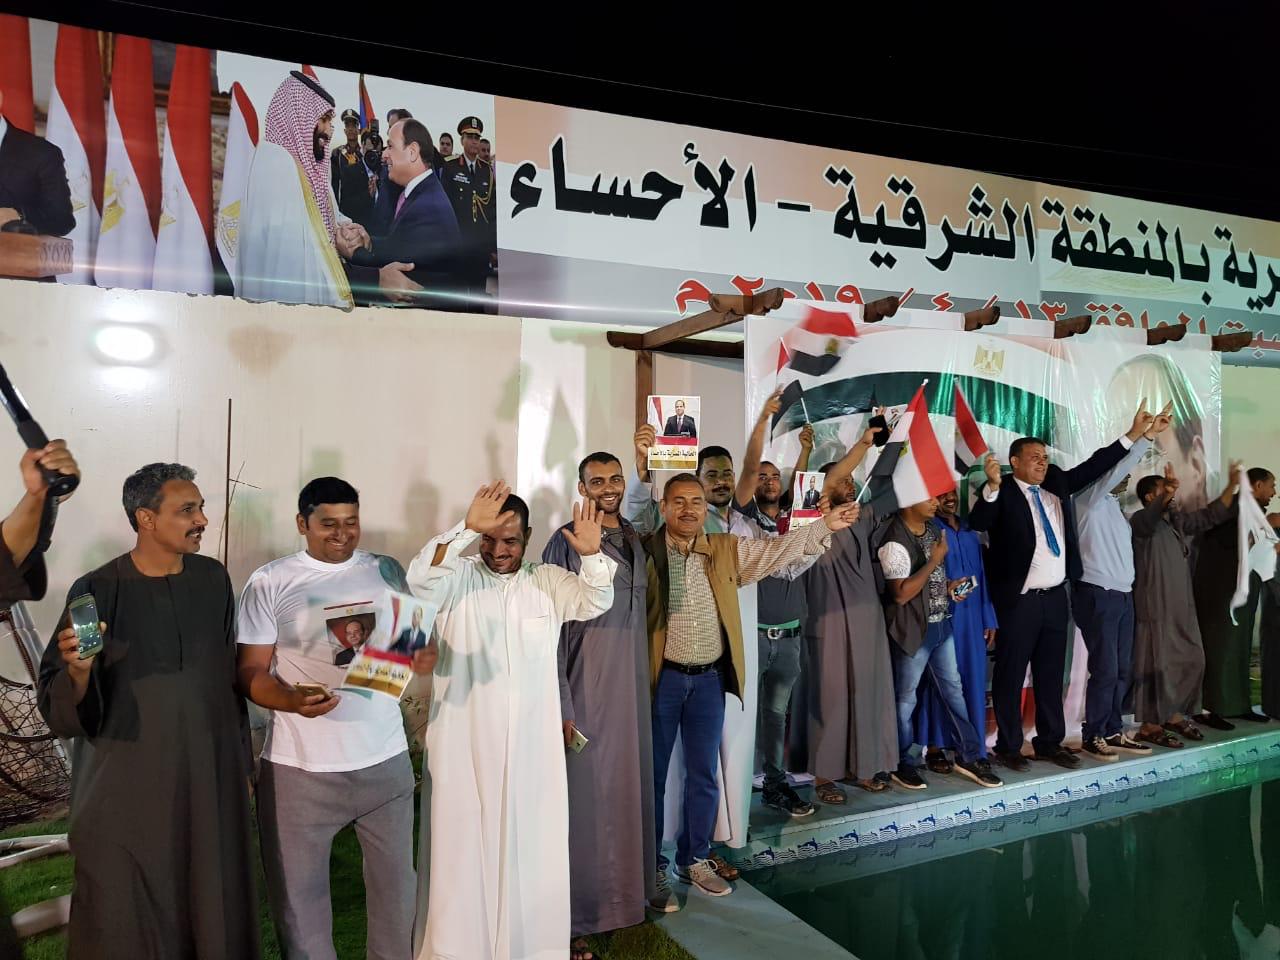   صور وفيديوهات|| الجالية المصرية فى الإحساء السعودية تحتفل على طريقتها بالتعديلات الدستورية